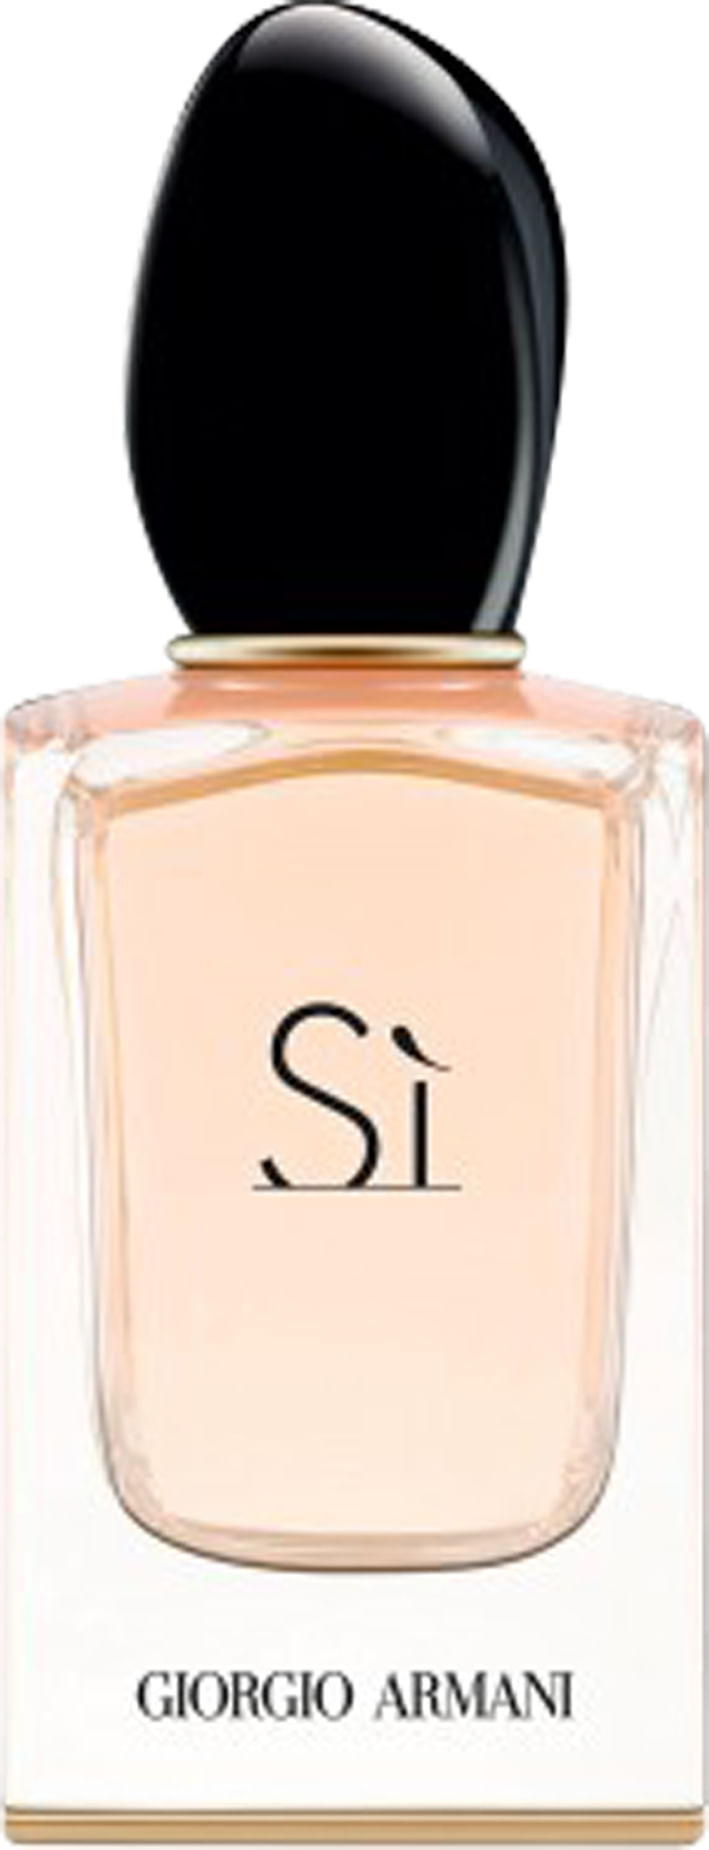 Eau-de-parfum-Armani-Si-Pour-Femme-x-100-ml-